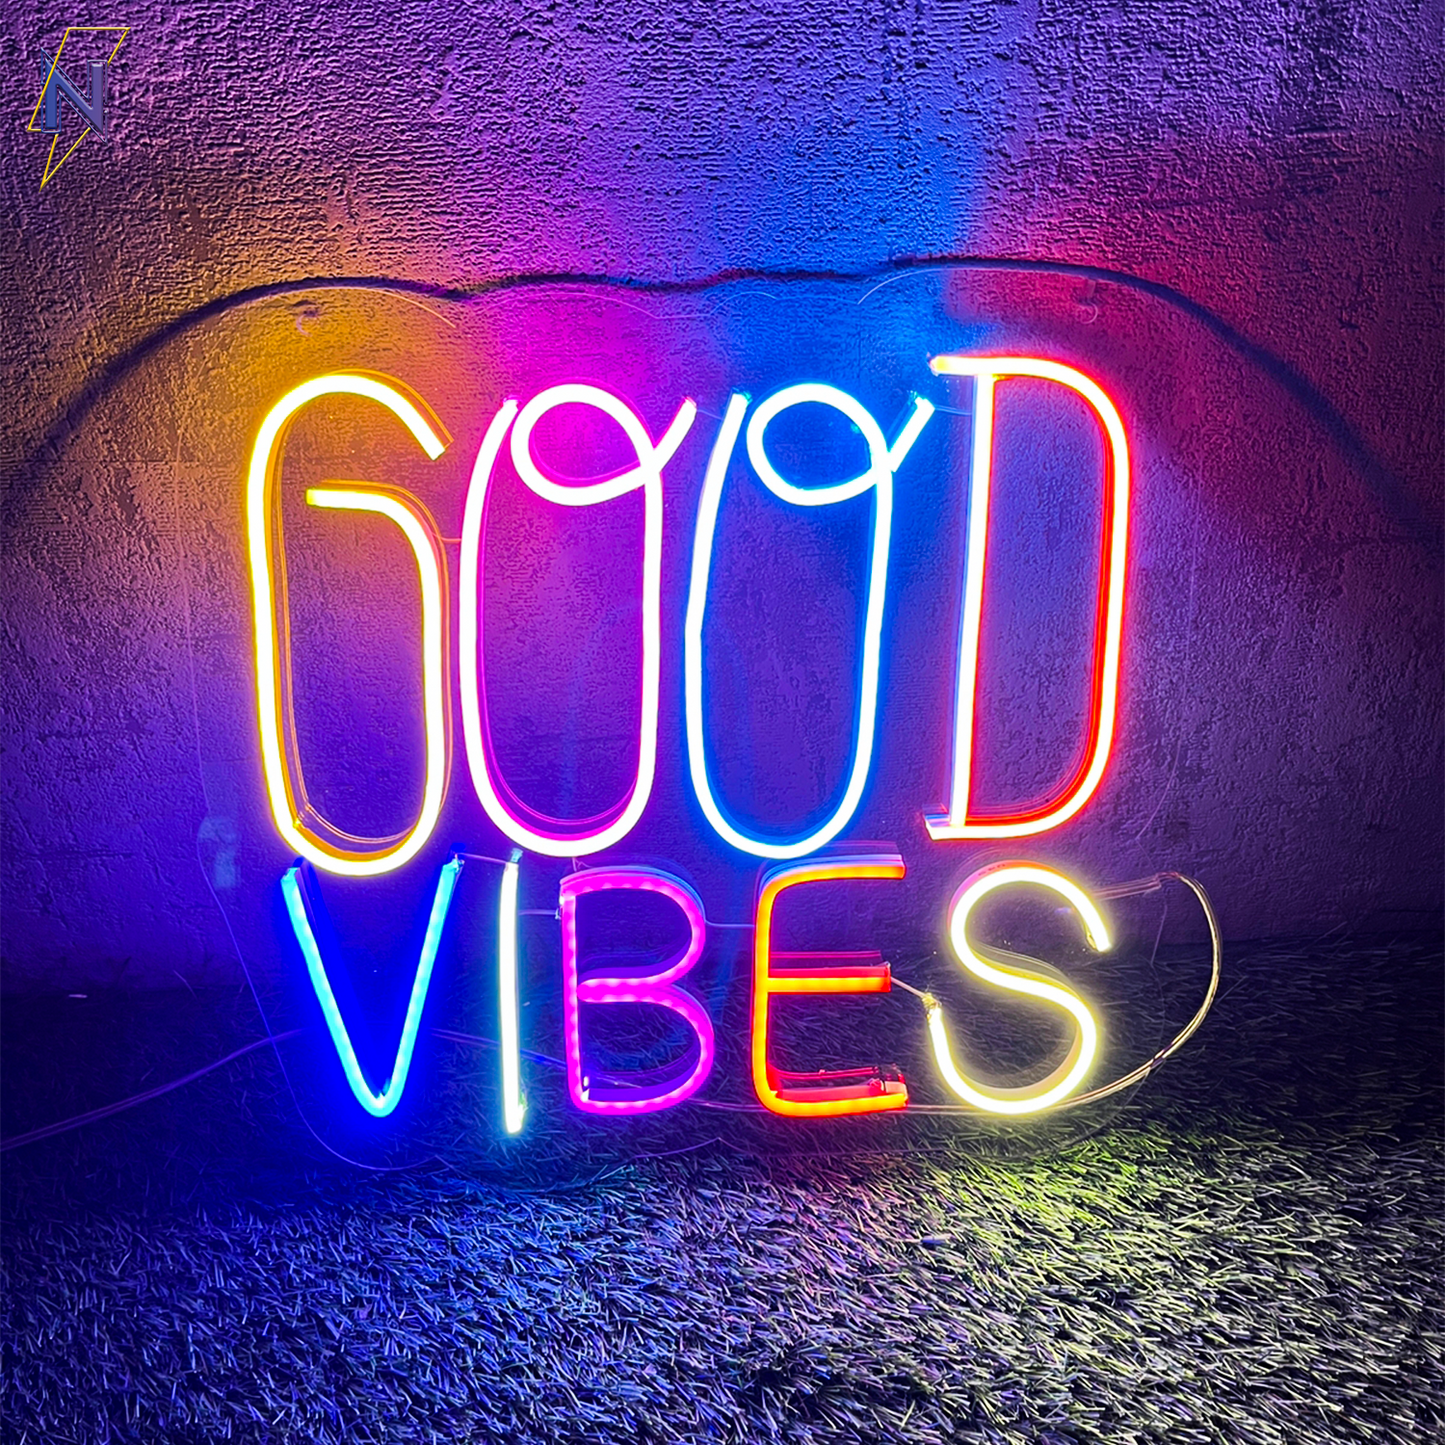 Good Vibes Neon Sign - Neonzastudio